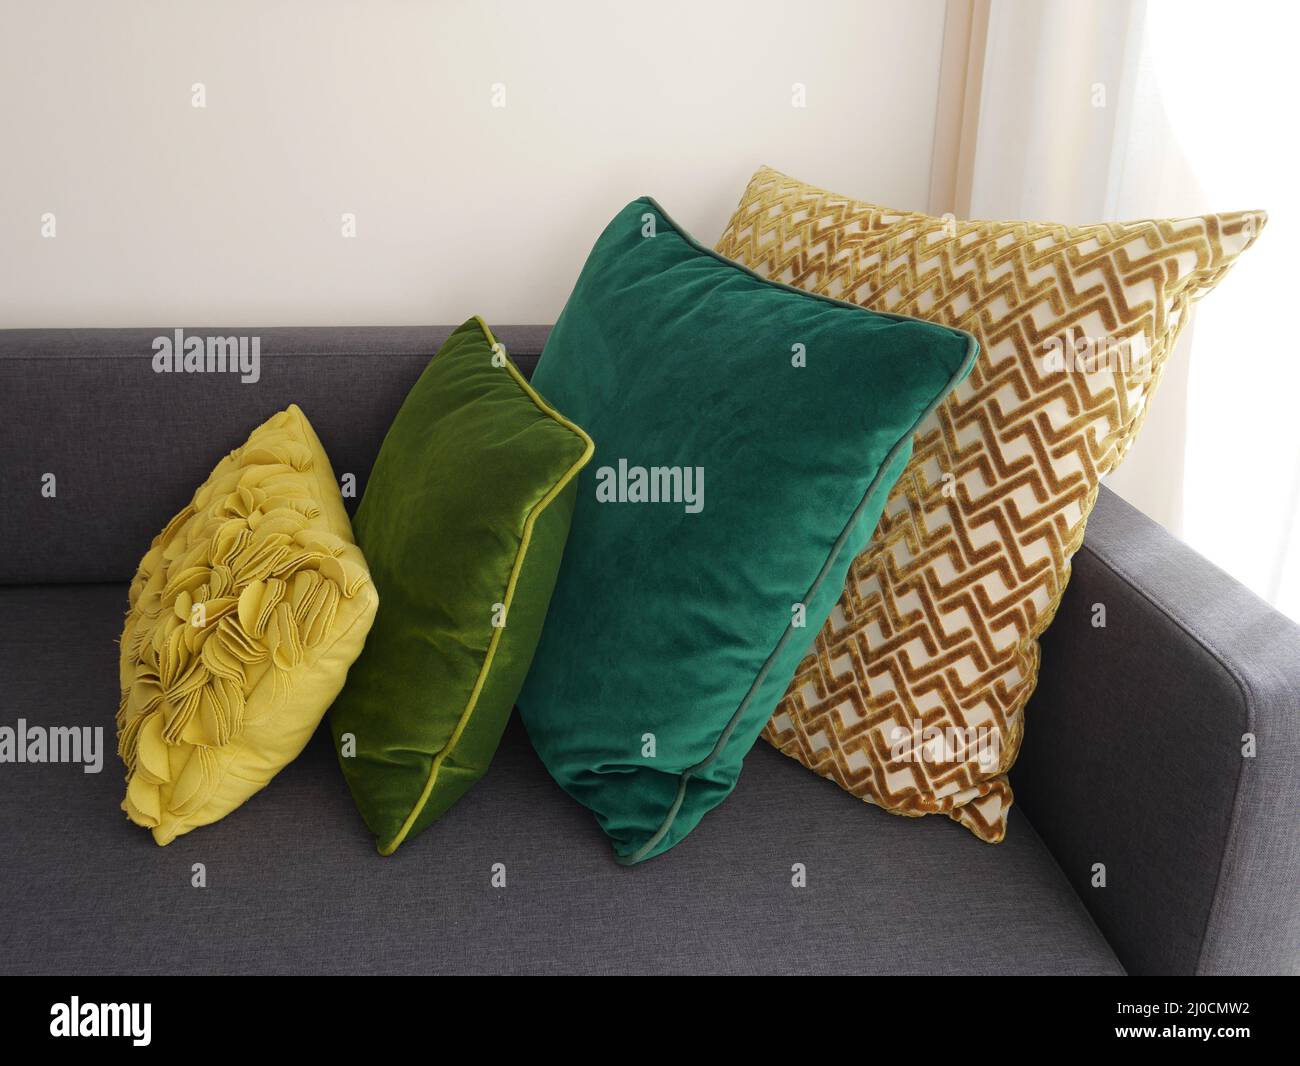 Selezione di eleganti cuscini verdi e gialli su un moderno divano